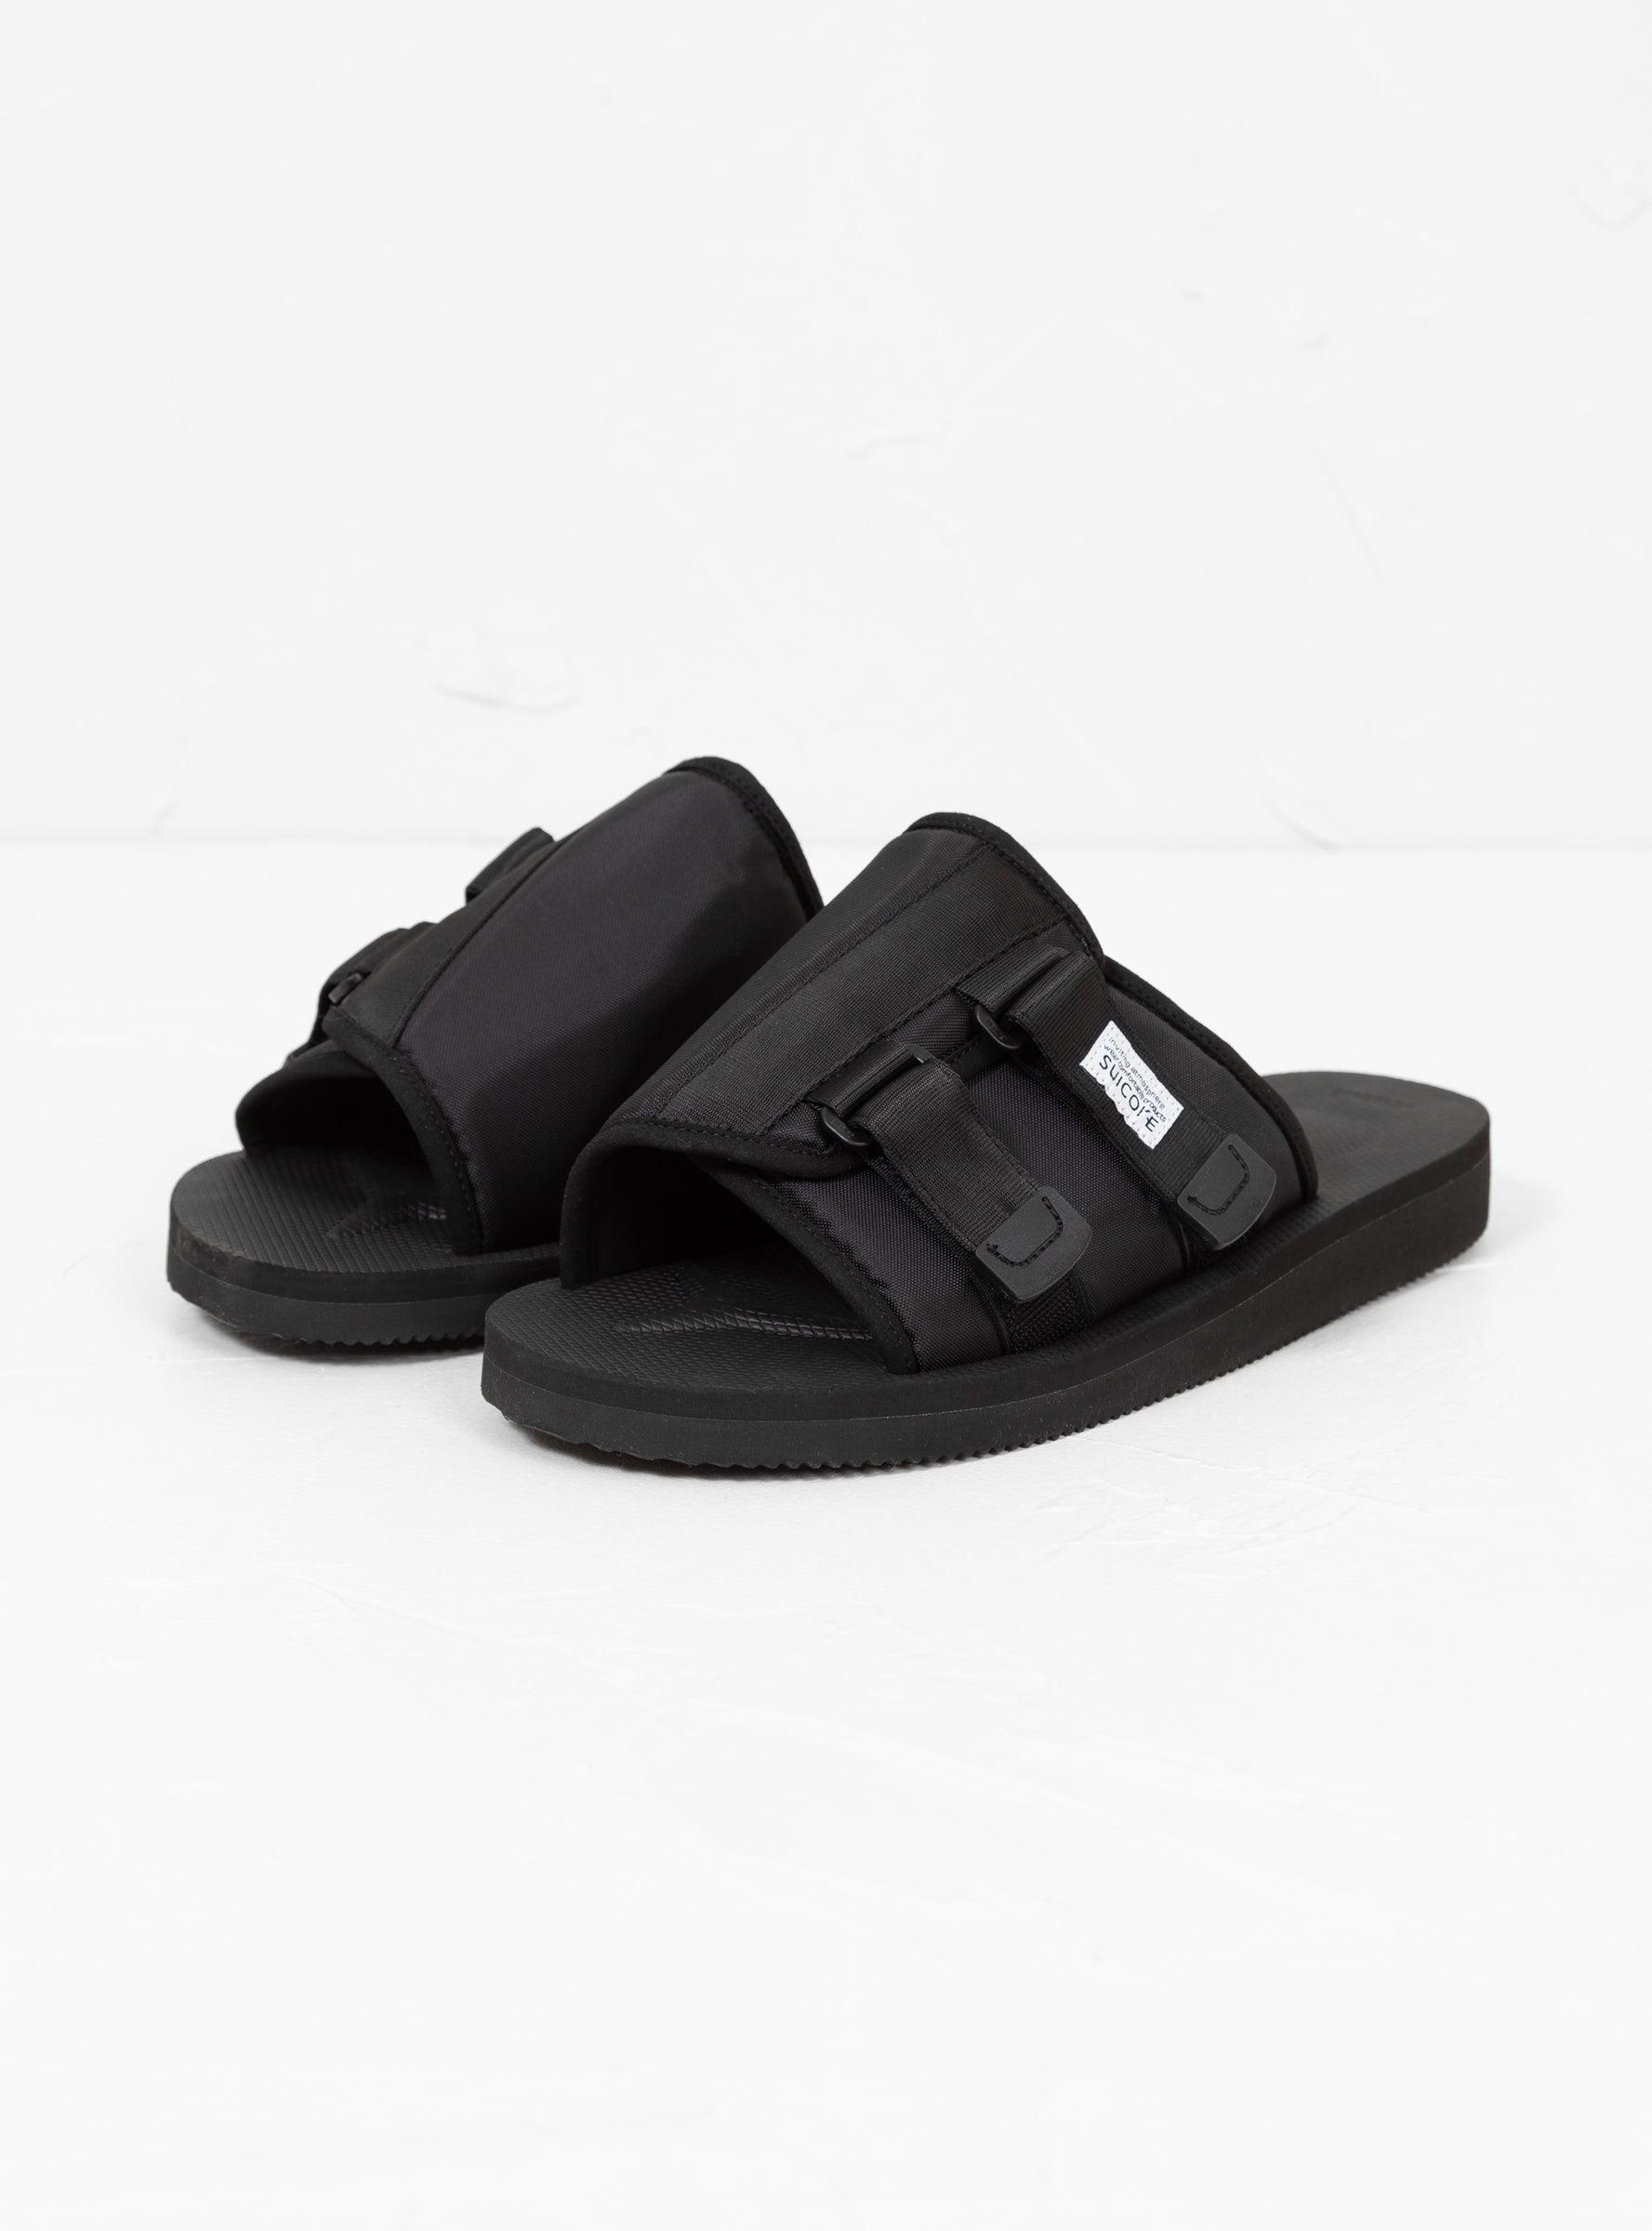 Suicoke Suicoke KAW-CAB Sandals Black - Size: UK 9